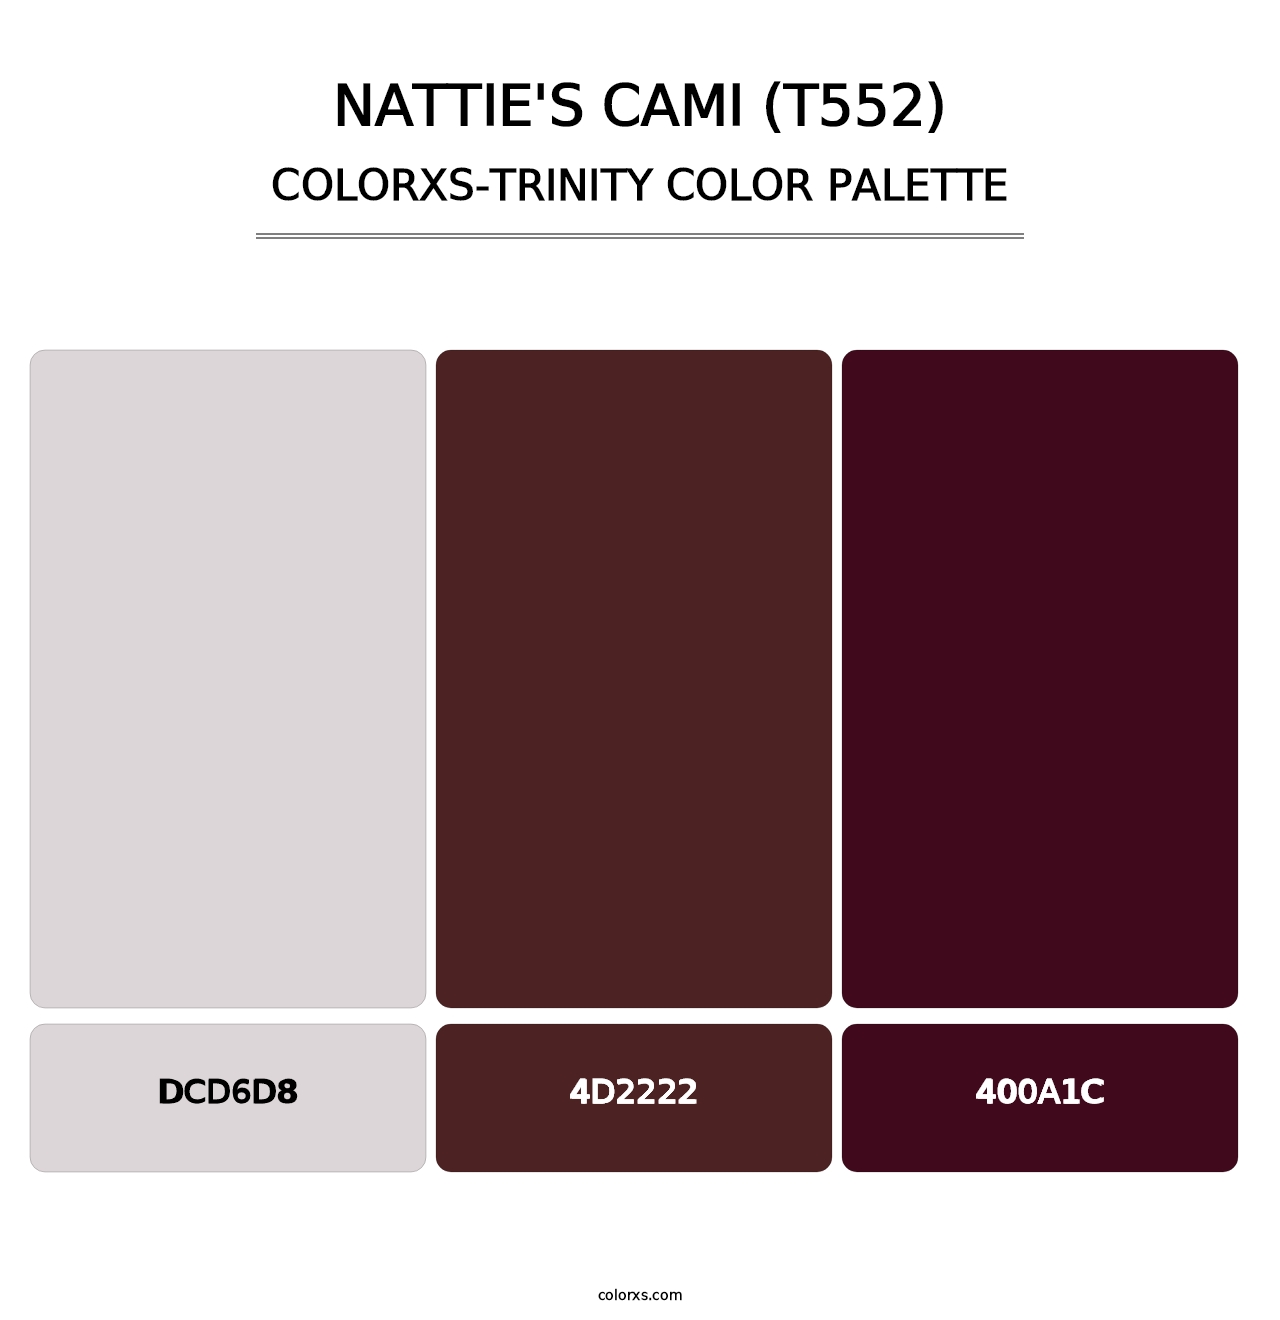 Nattie's Cami (T552) - Colorxs Trinity Palette